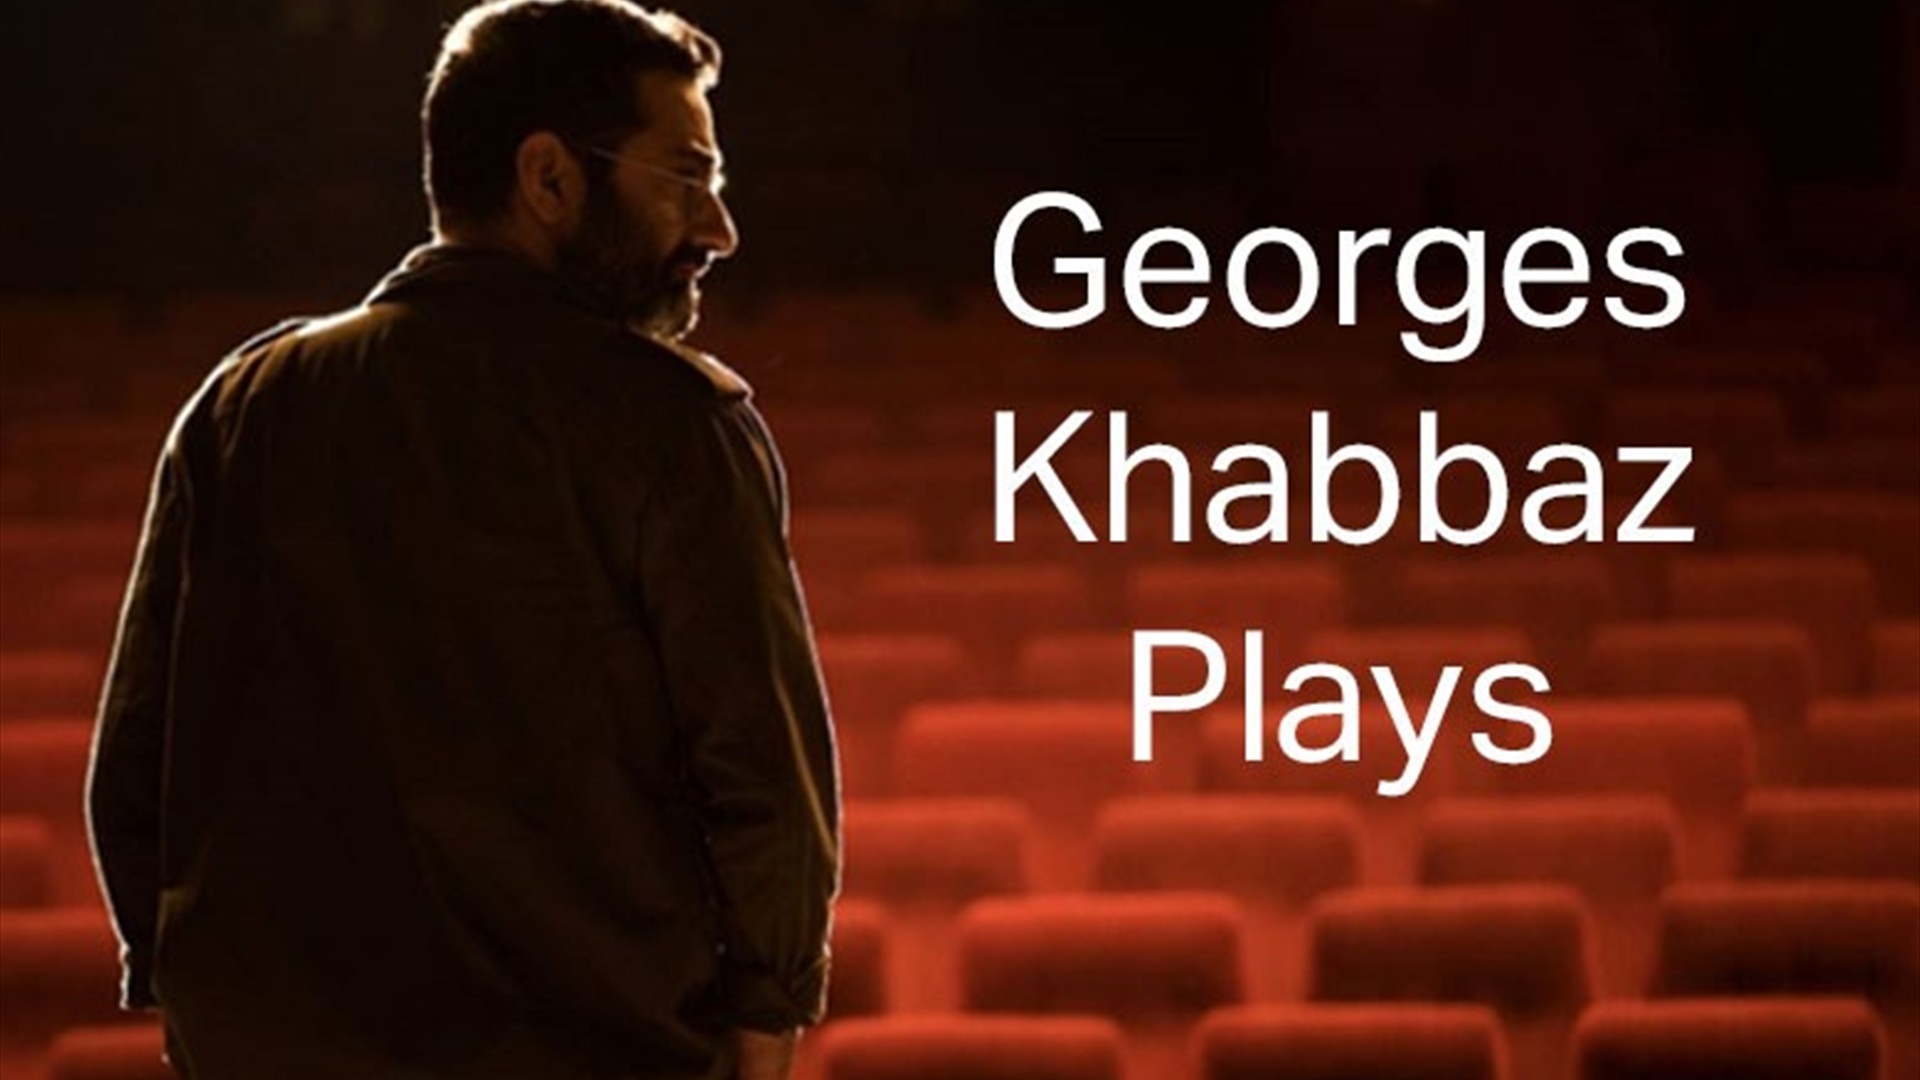 Georges Khabbaz Plays